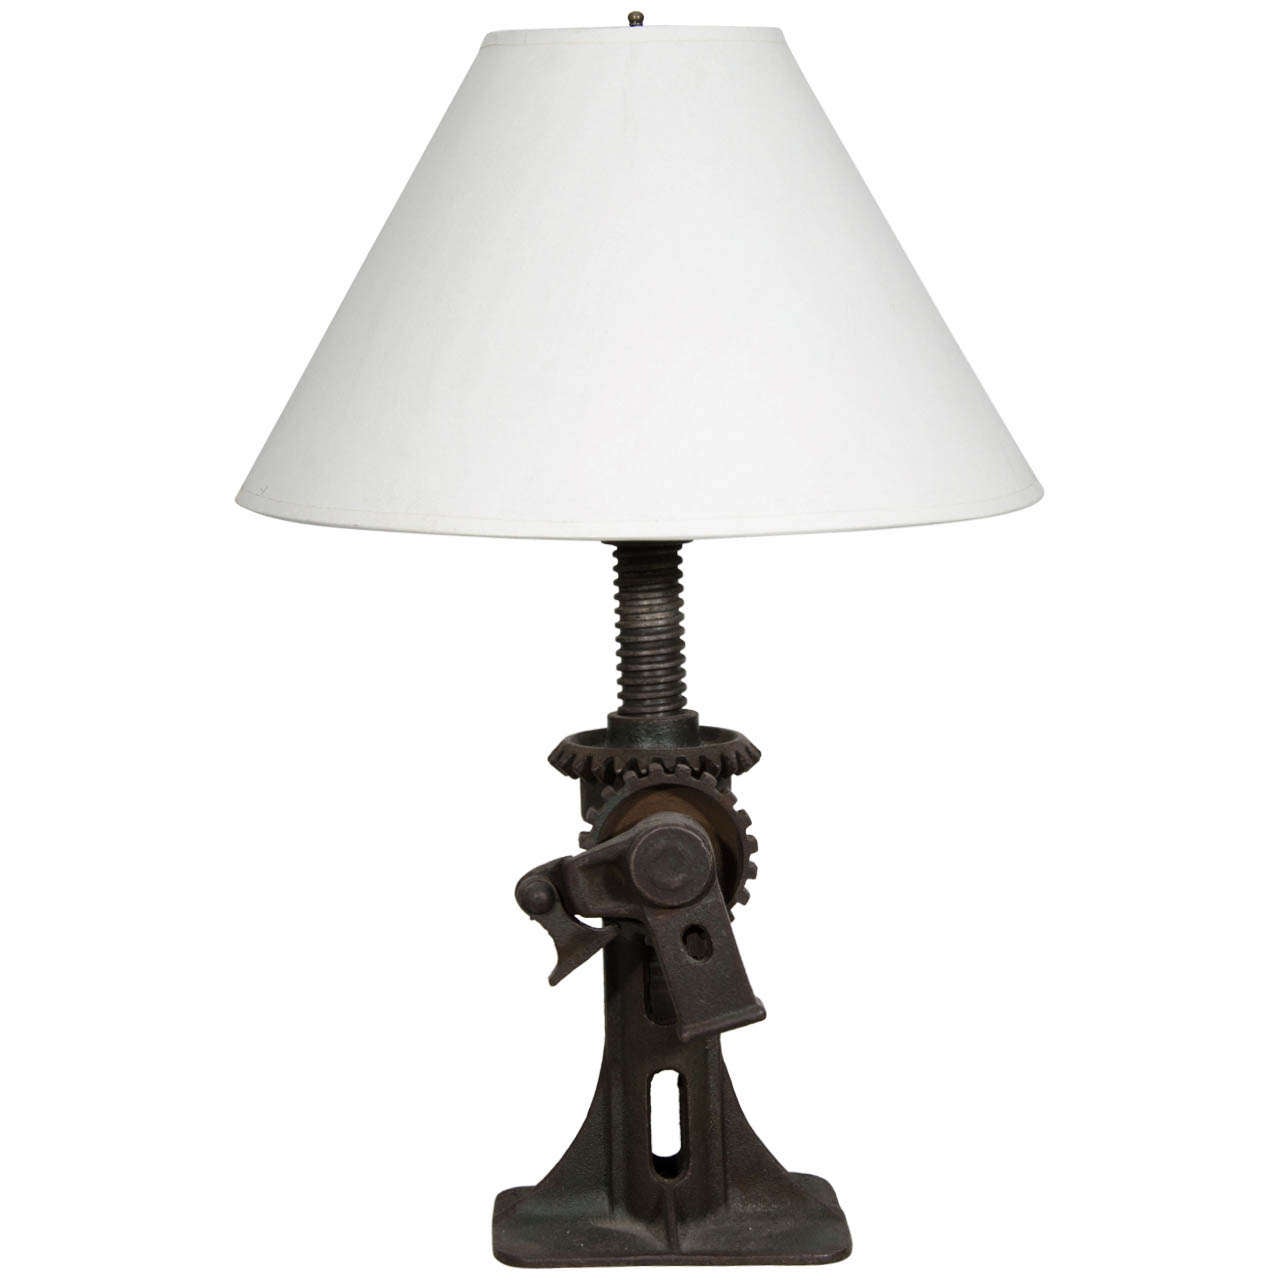 Vintage Industrial Gear Lamp